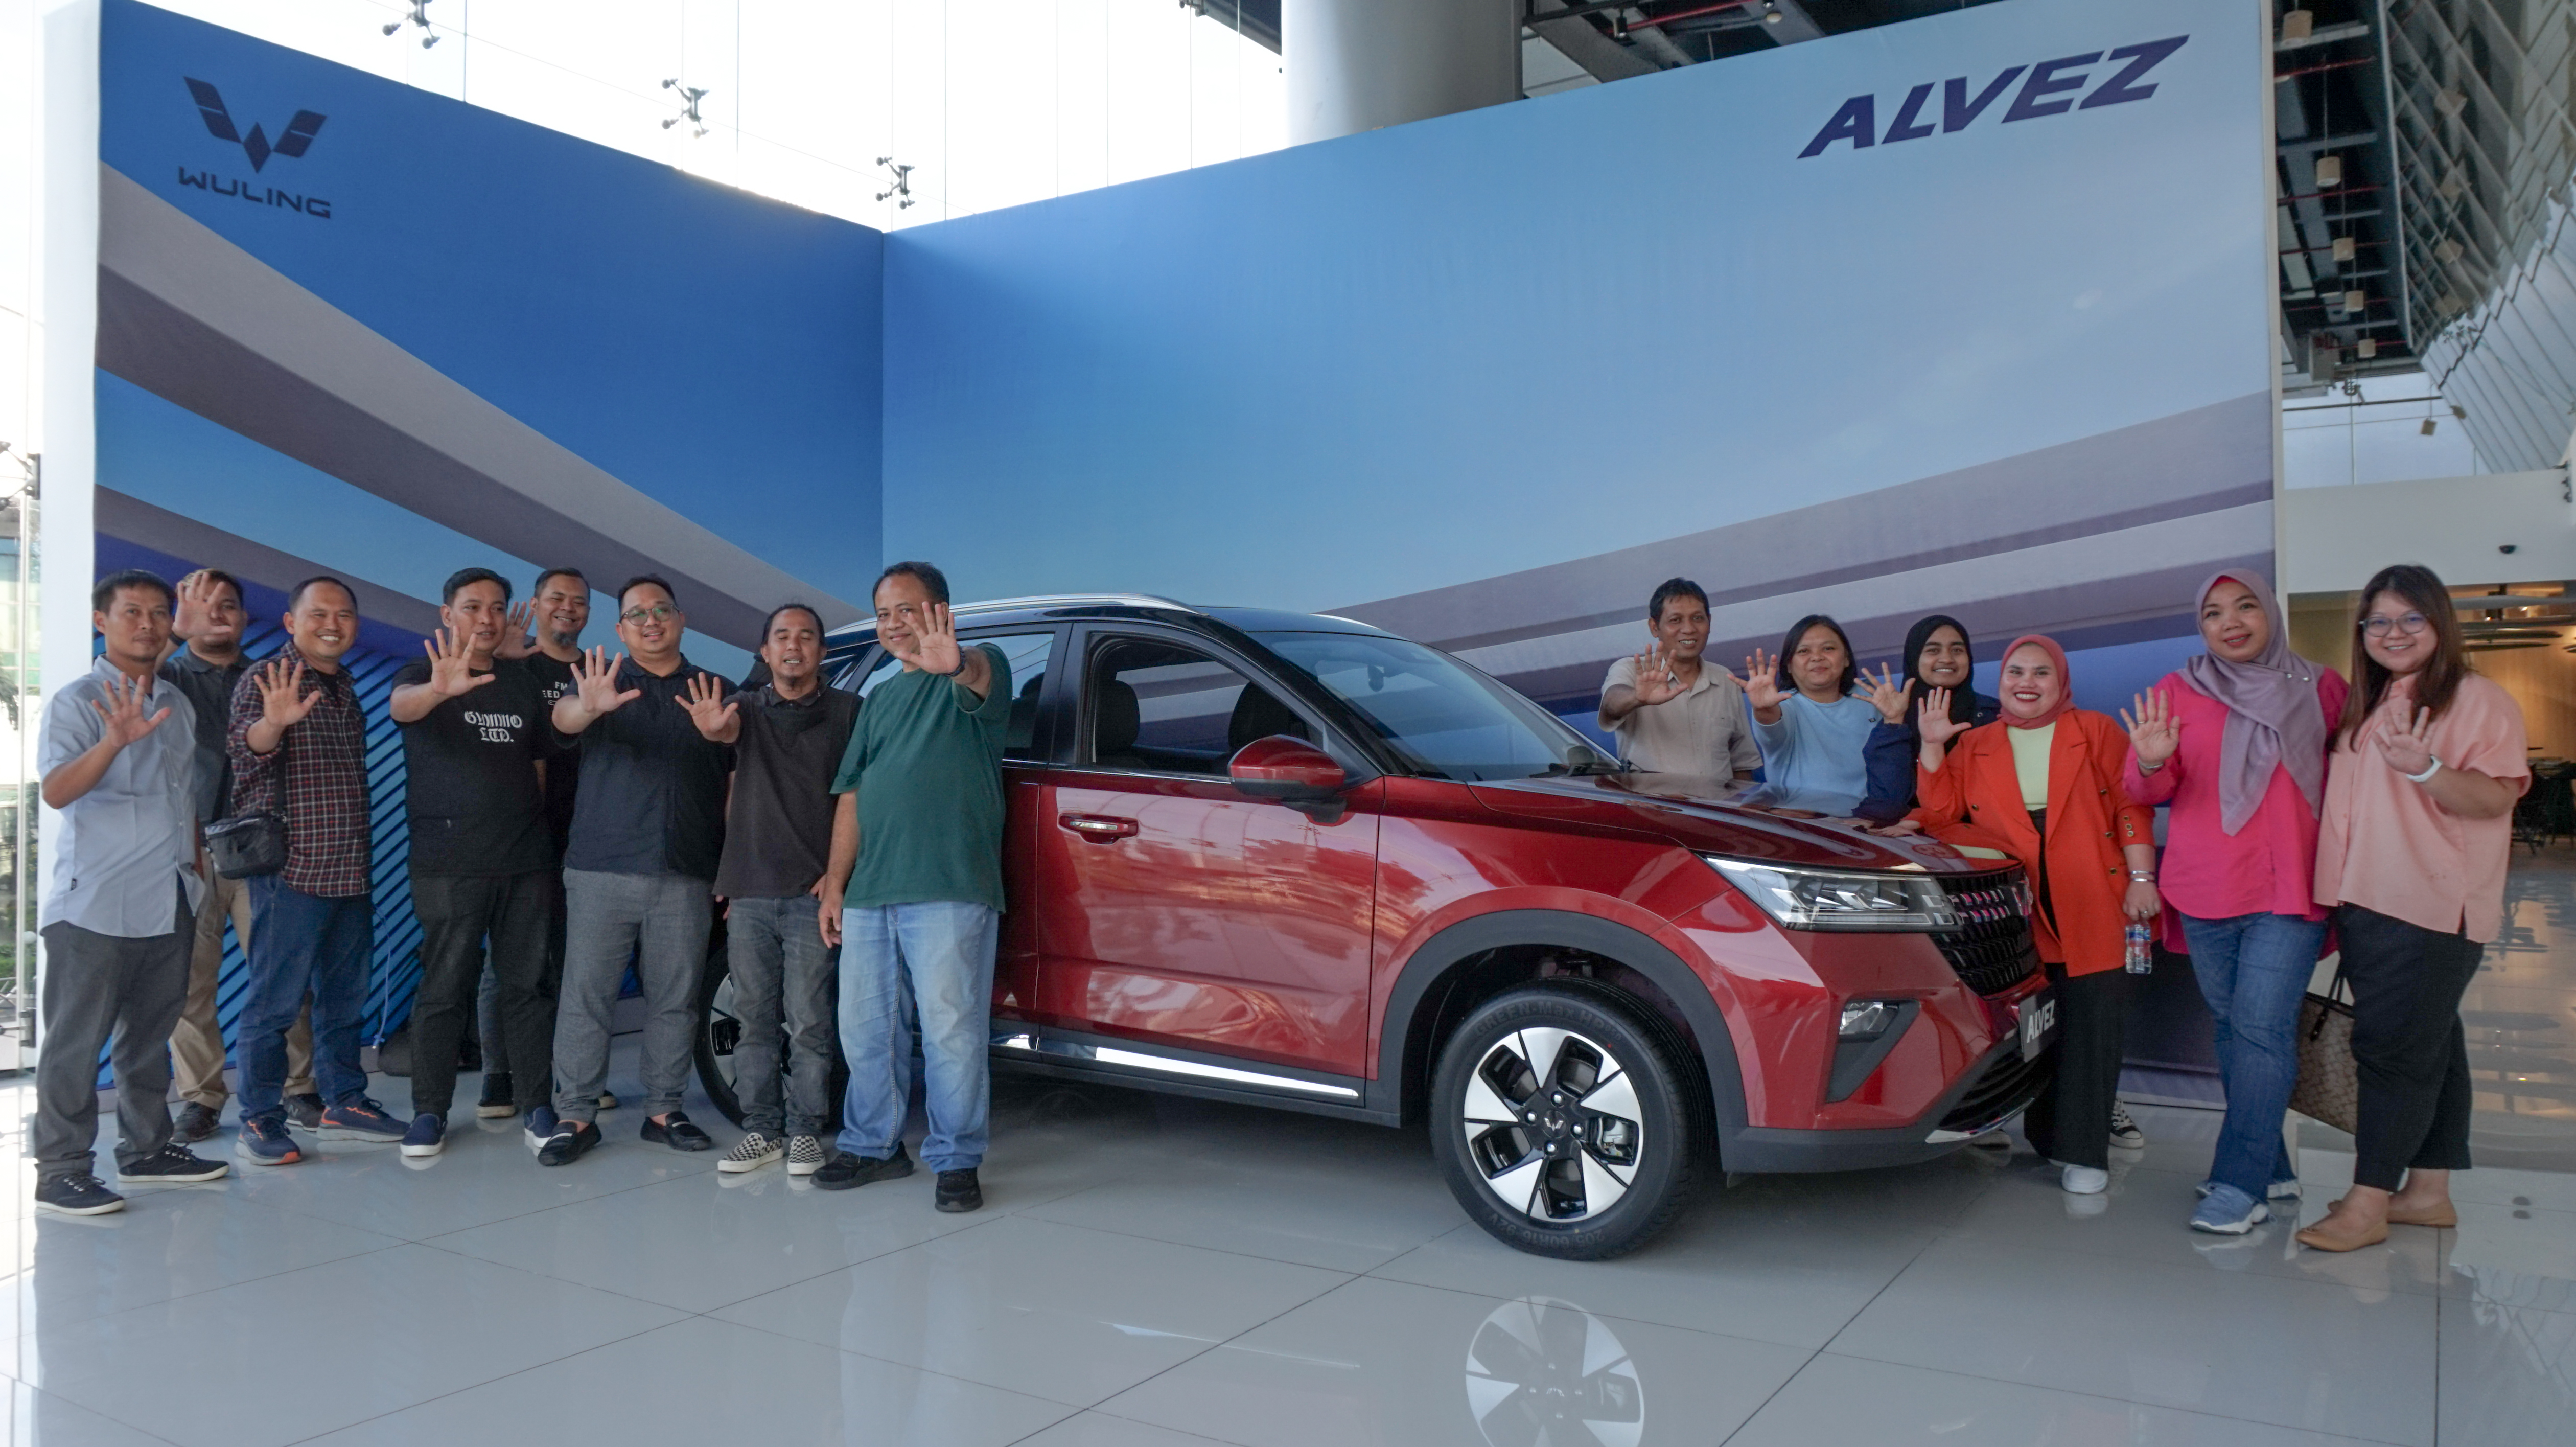 Image Wuling Ajak Media Regional untuk Melihat Langsung Compact SUV Terbarunya, Alvez